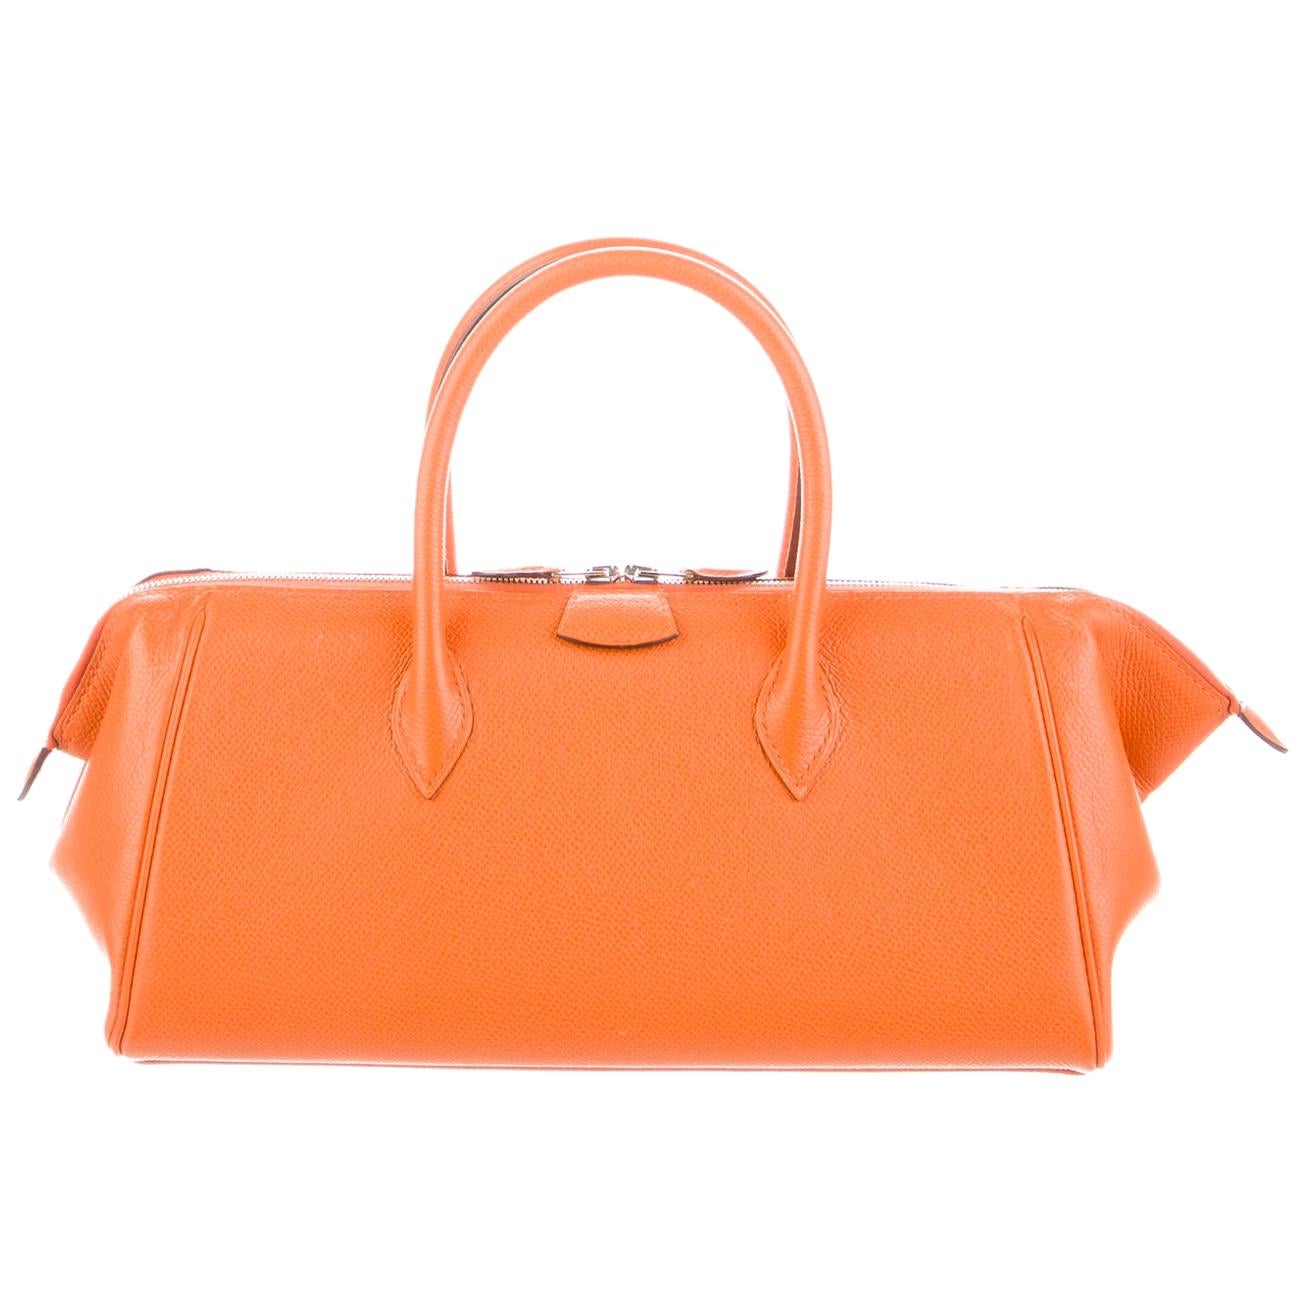 Hermes Orange Leather Palladium Zip Top Handle Satchel Carryall Tote Bag